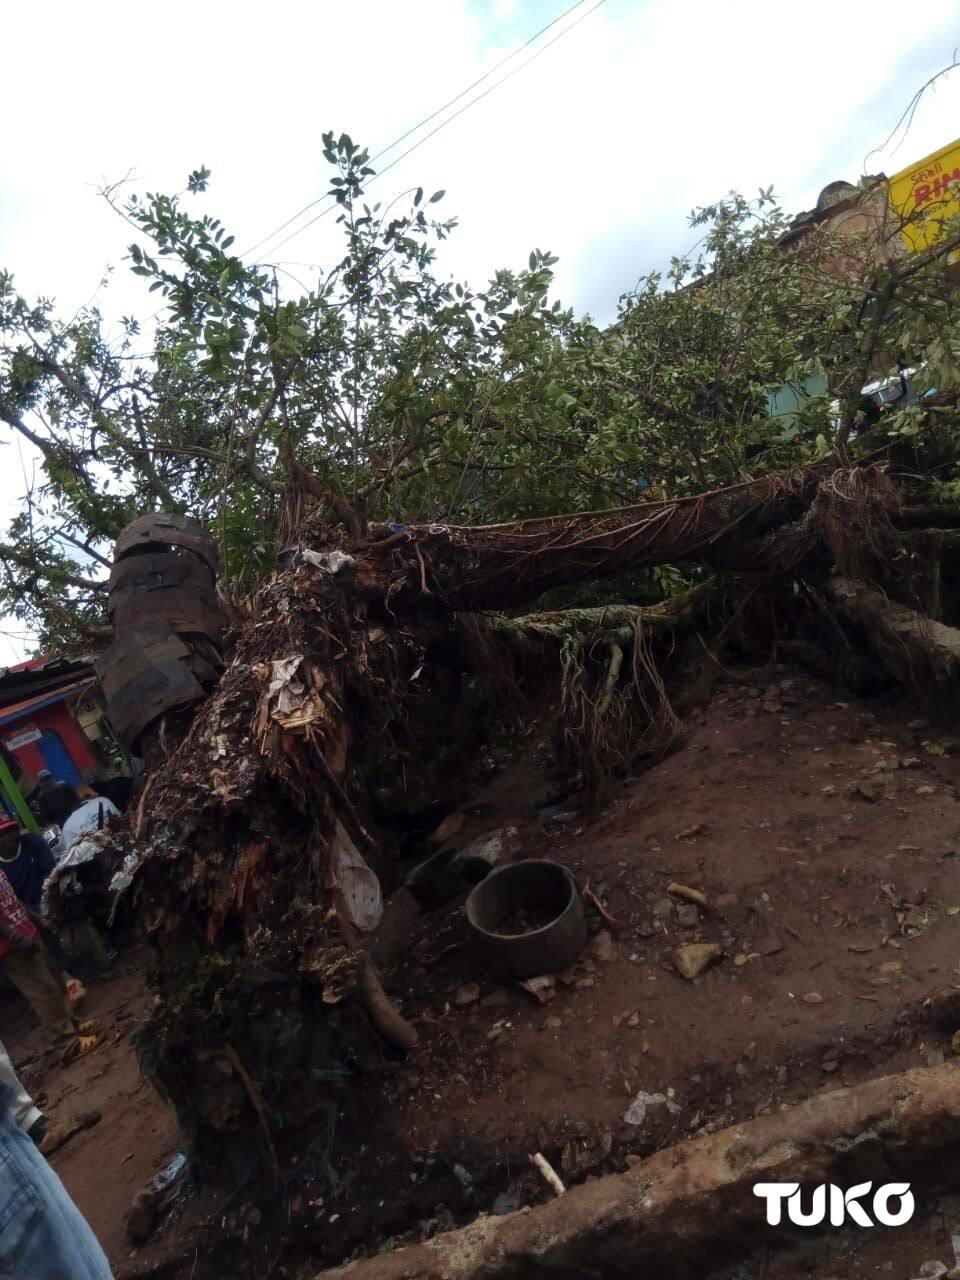 Panic as mugumo tree falls in Murang'a county